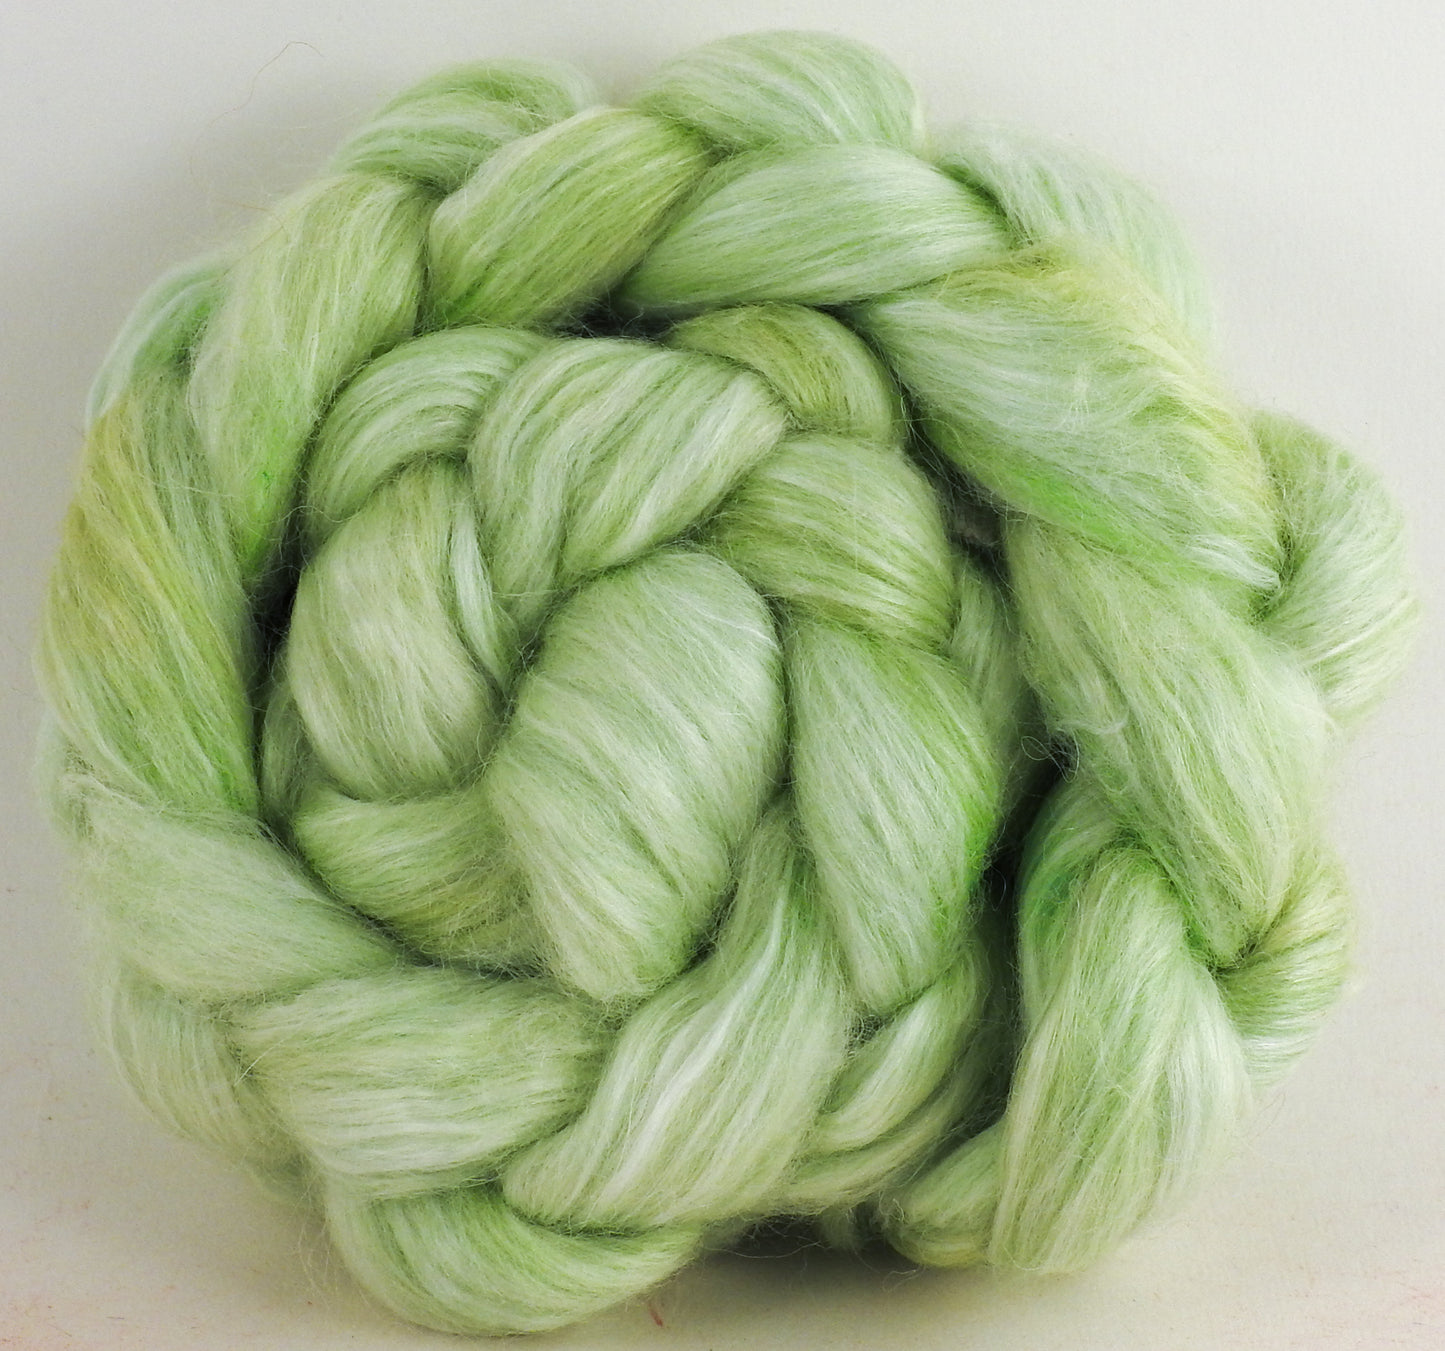 White-faced Woodland/ Ramie/ Llama/ Bamboo (35/35/15/15) - Celery - (2.3 oz.)